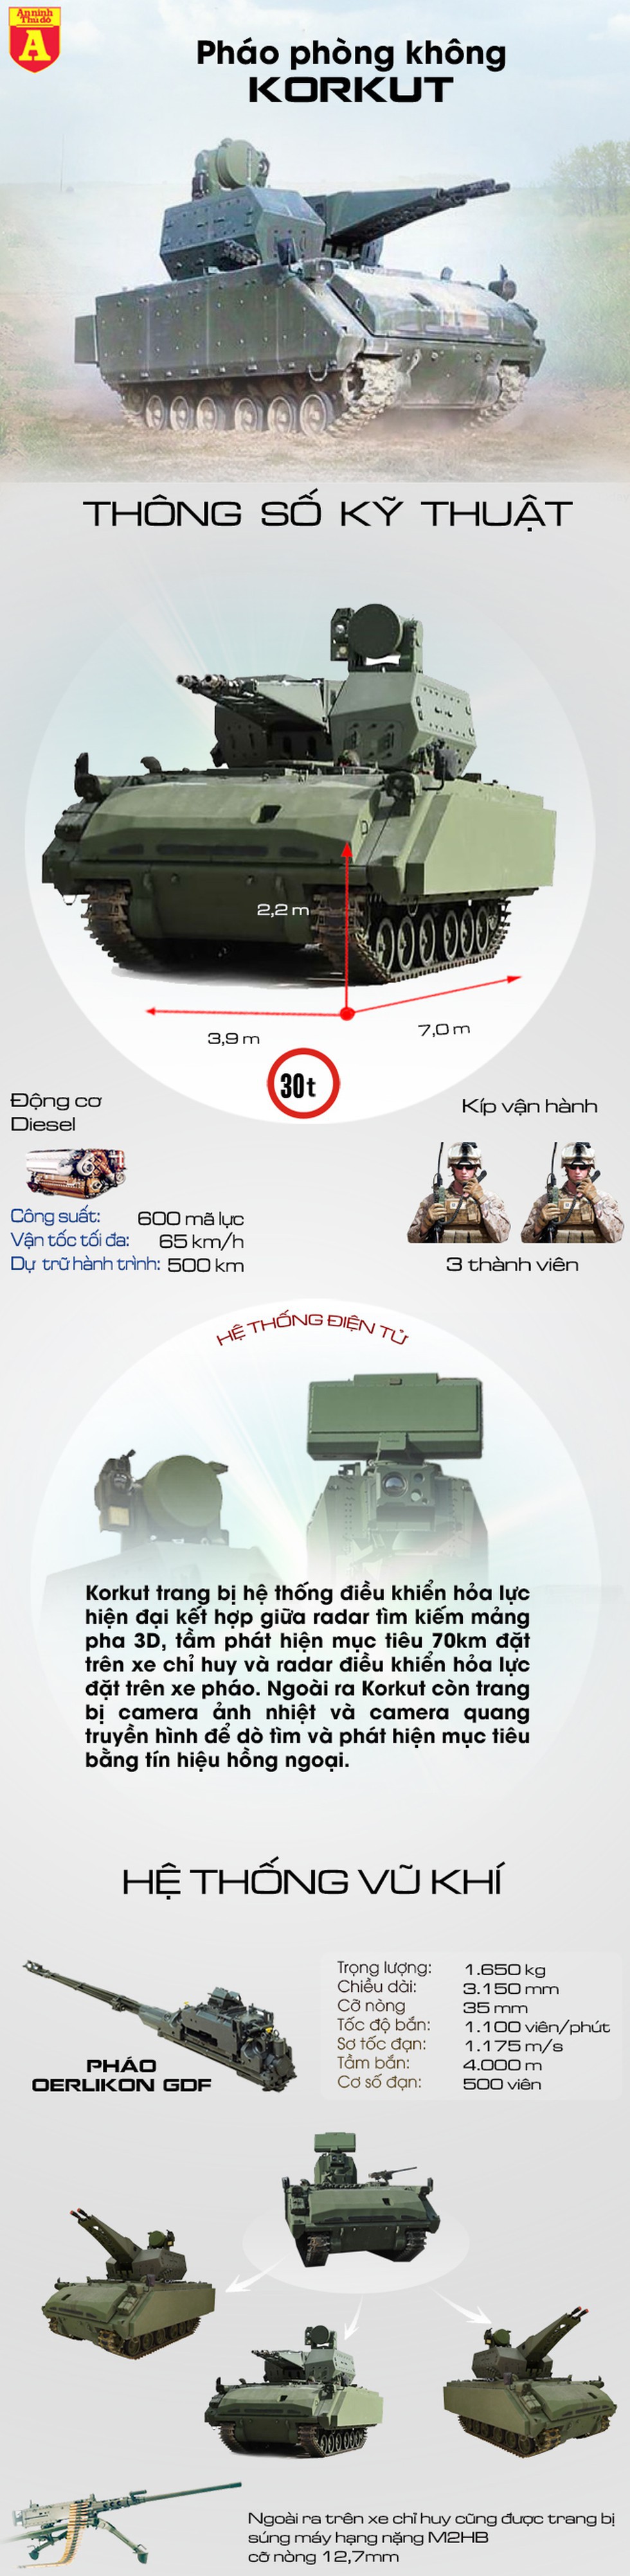 [Infographics] Thổ Nhĩ Kỳ tung "sát thủ" phòng không vào Syria - Ảnh 1